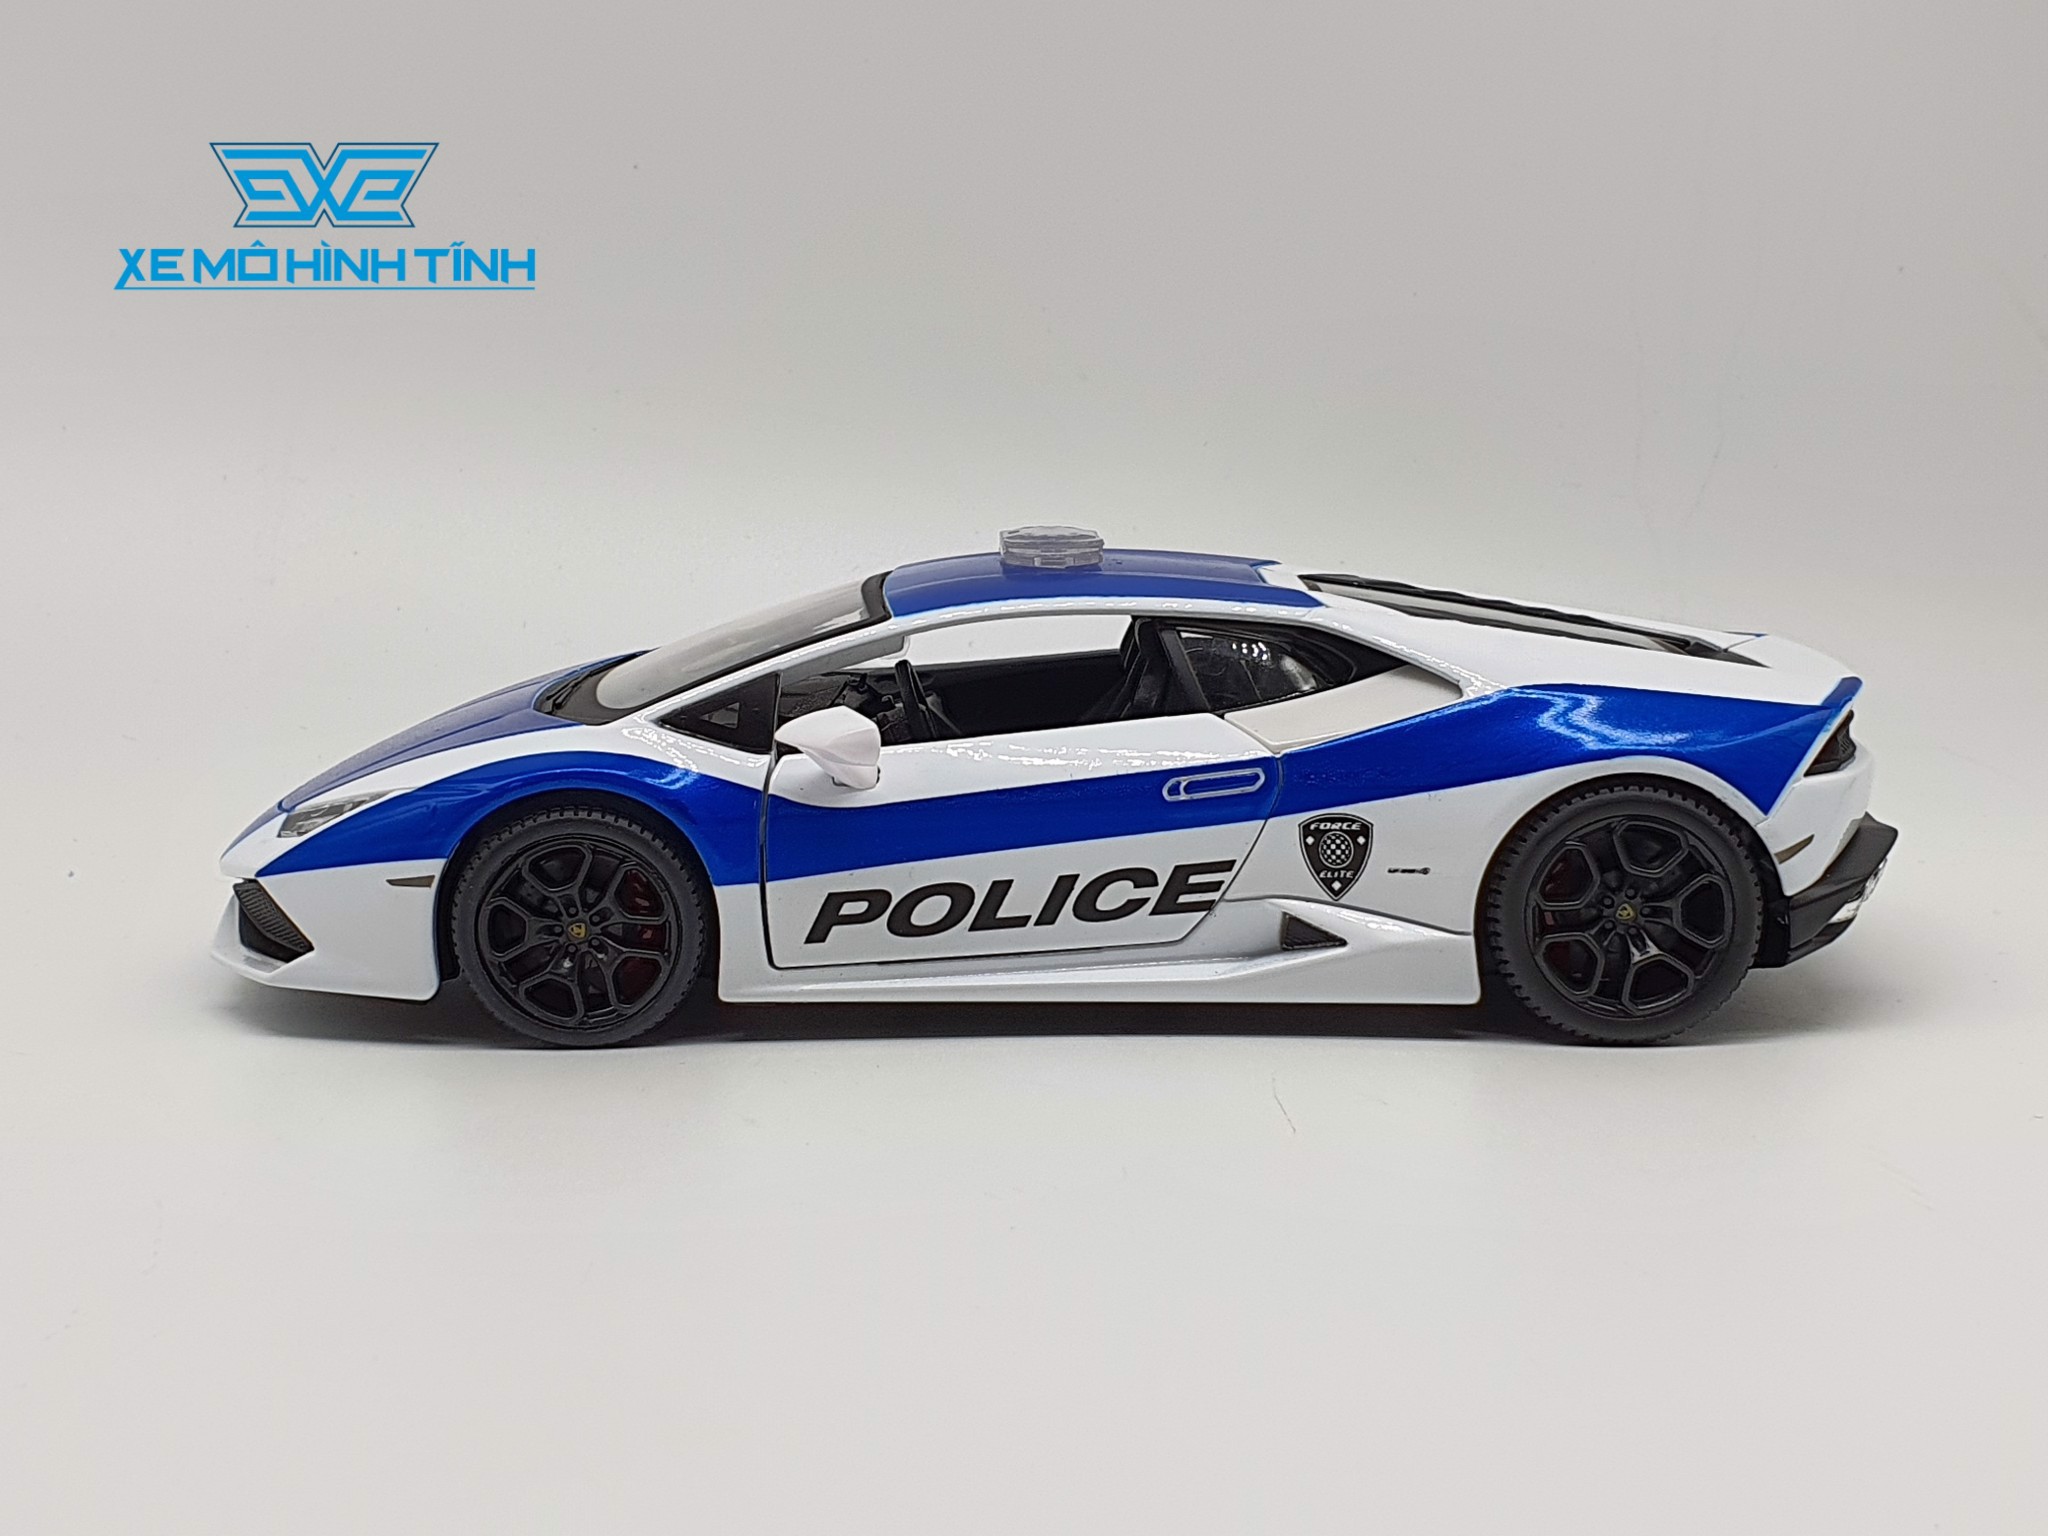 Xe Mô Hình Lamborghini Huracan Lp610-4 Police 1:24 Maisto (Trắng Xanh)